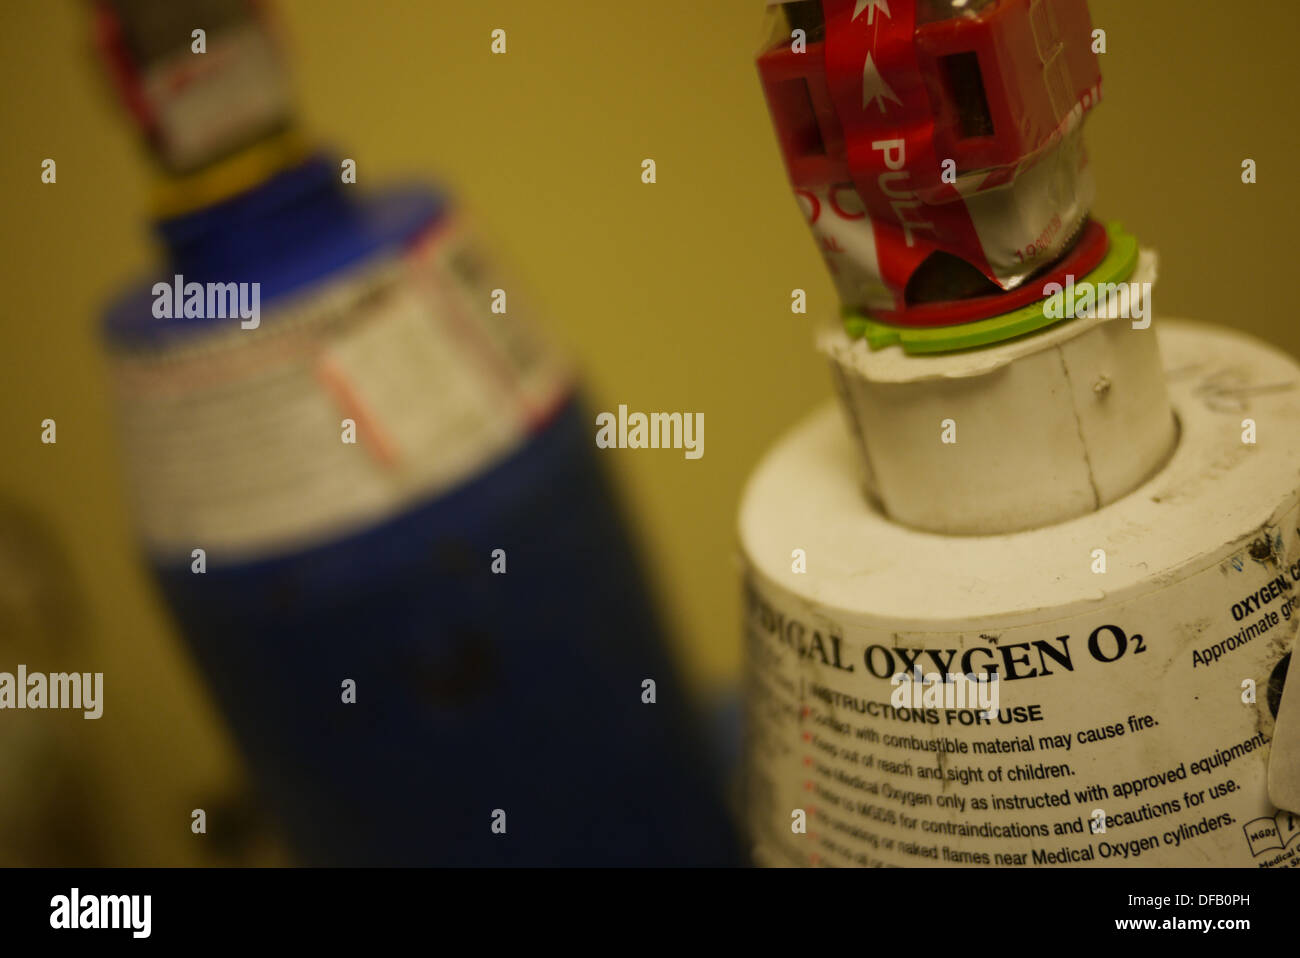 Sauerstoff-Flasche mit N2O Flasche hinter. Verwendet in Krankenhäusern  Stockfotografie - Alamy